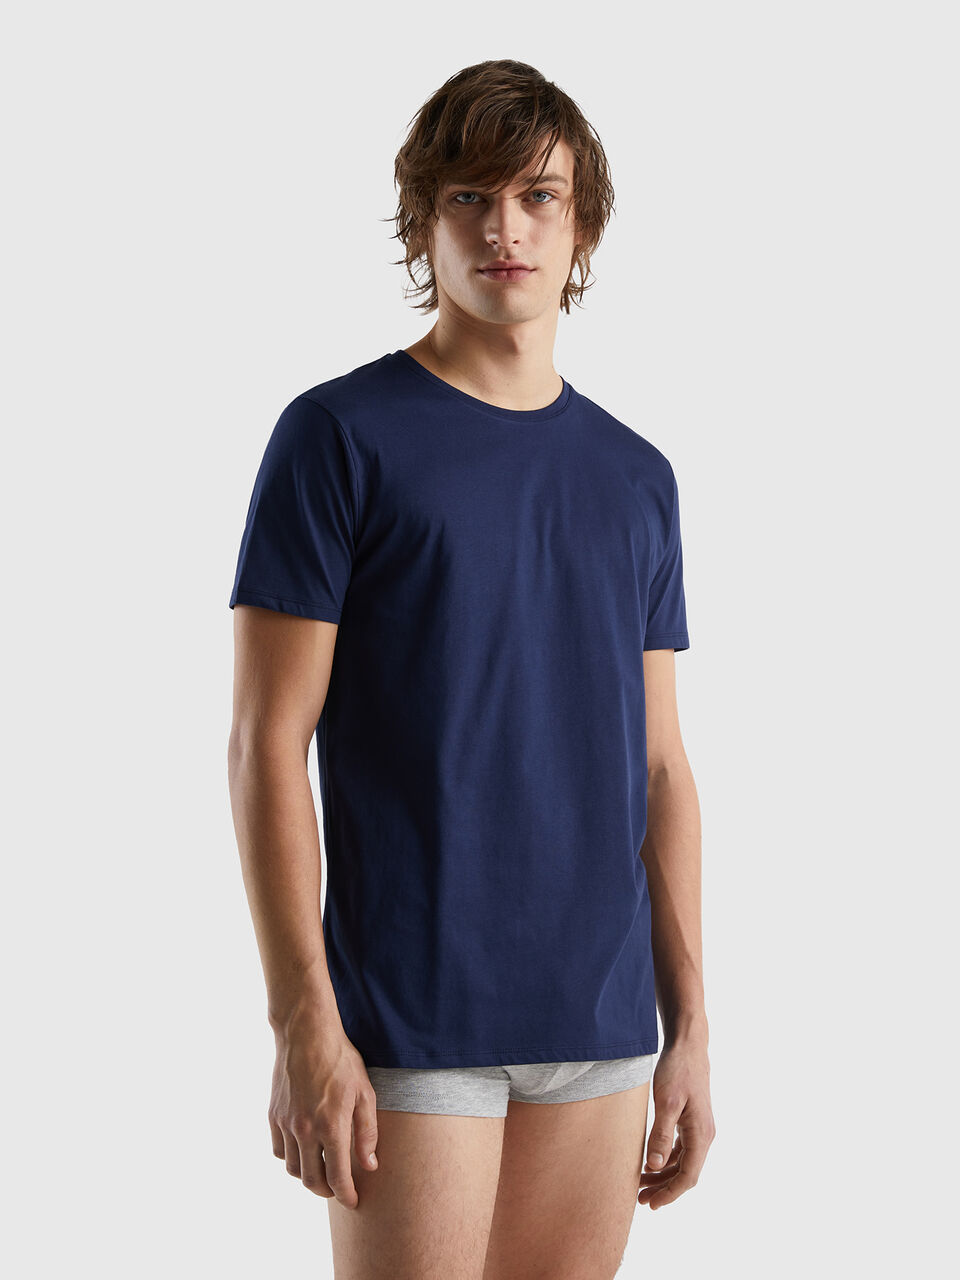 Long Dark | cotton - Blue Benetton fiber t-shirt